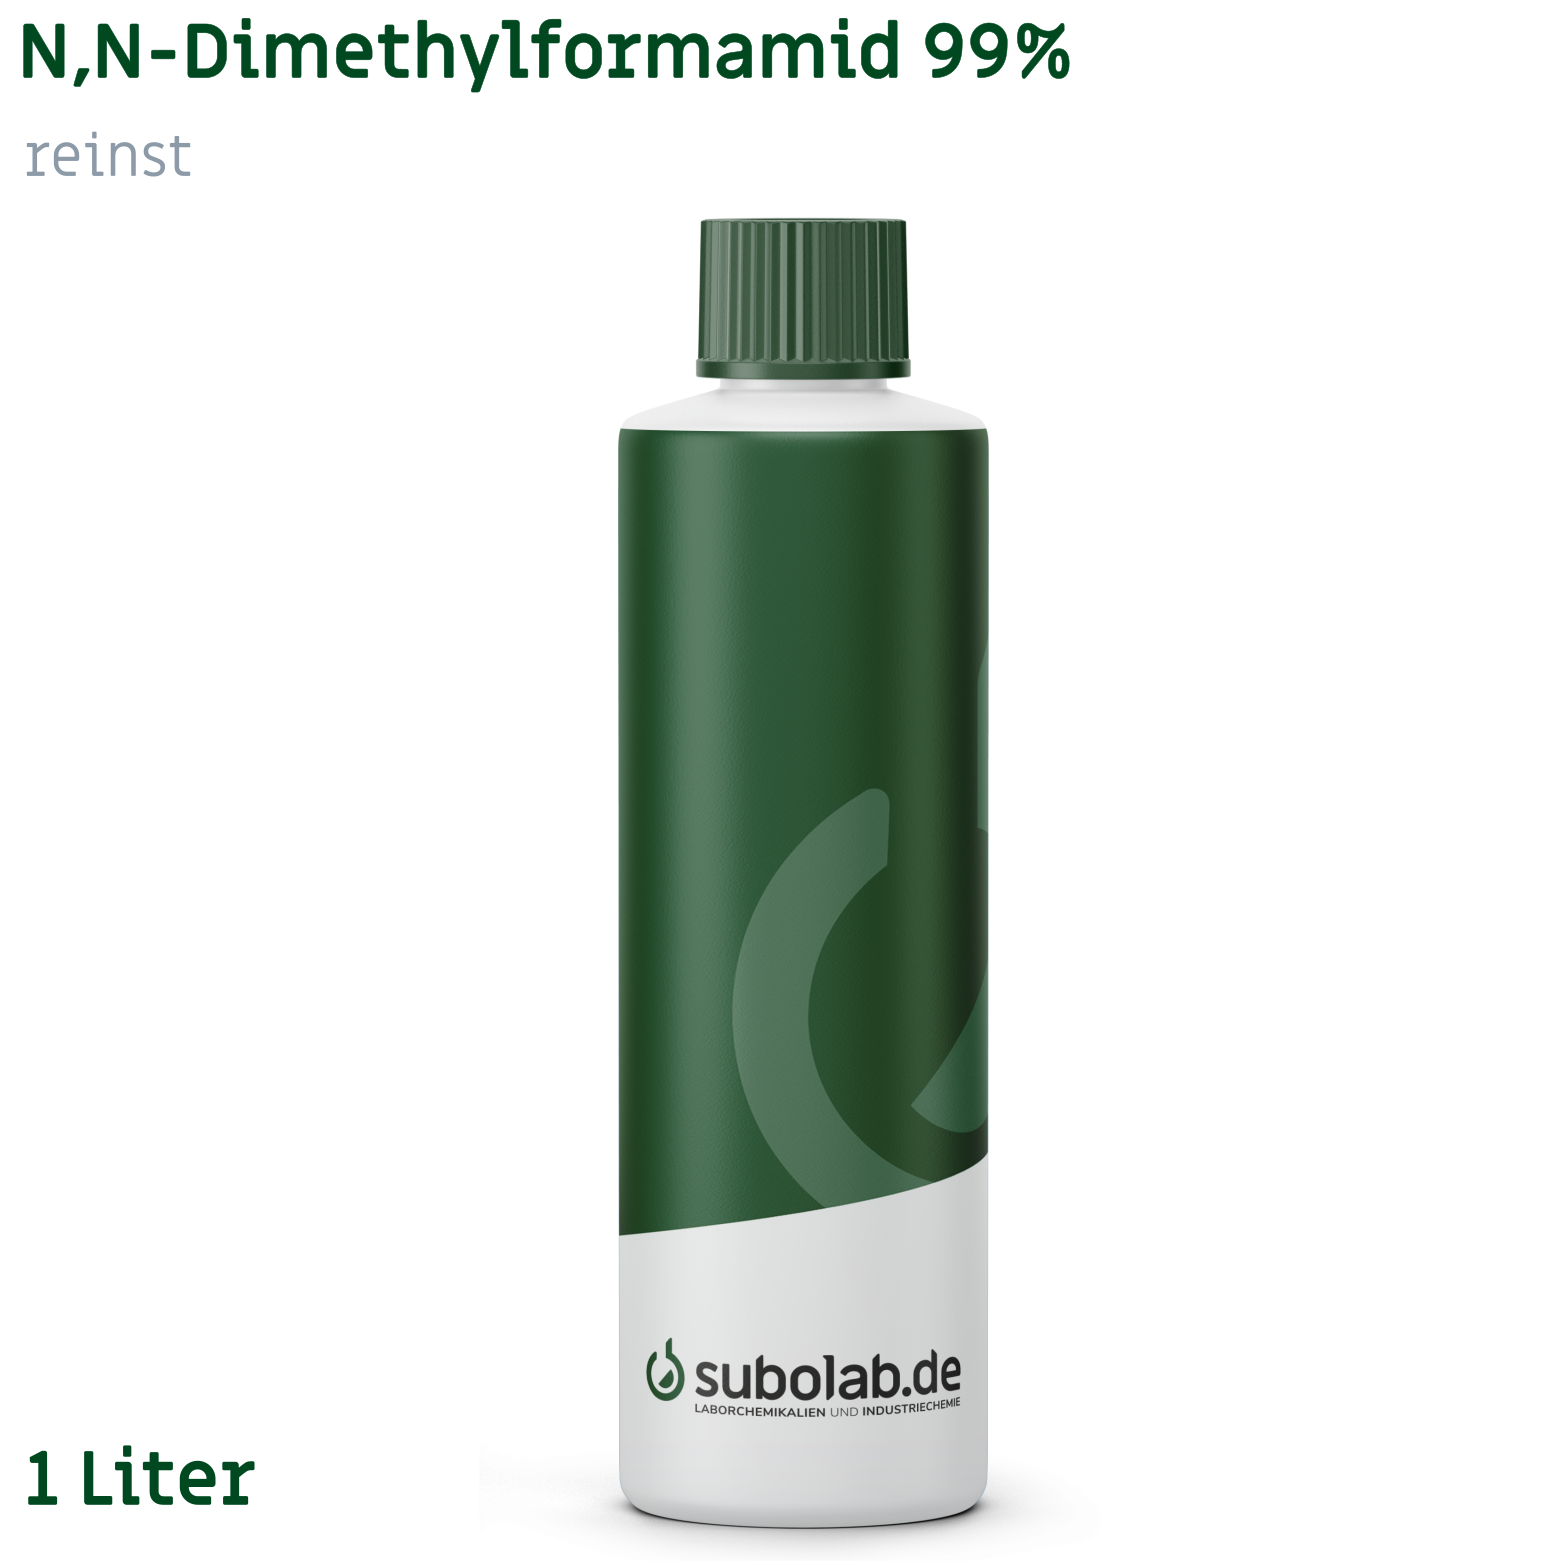 Bild von N,N-Dimethylformamid 99% reinst (1 Liter)